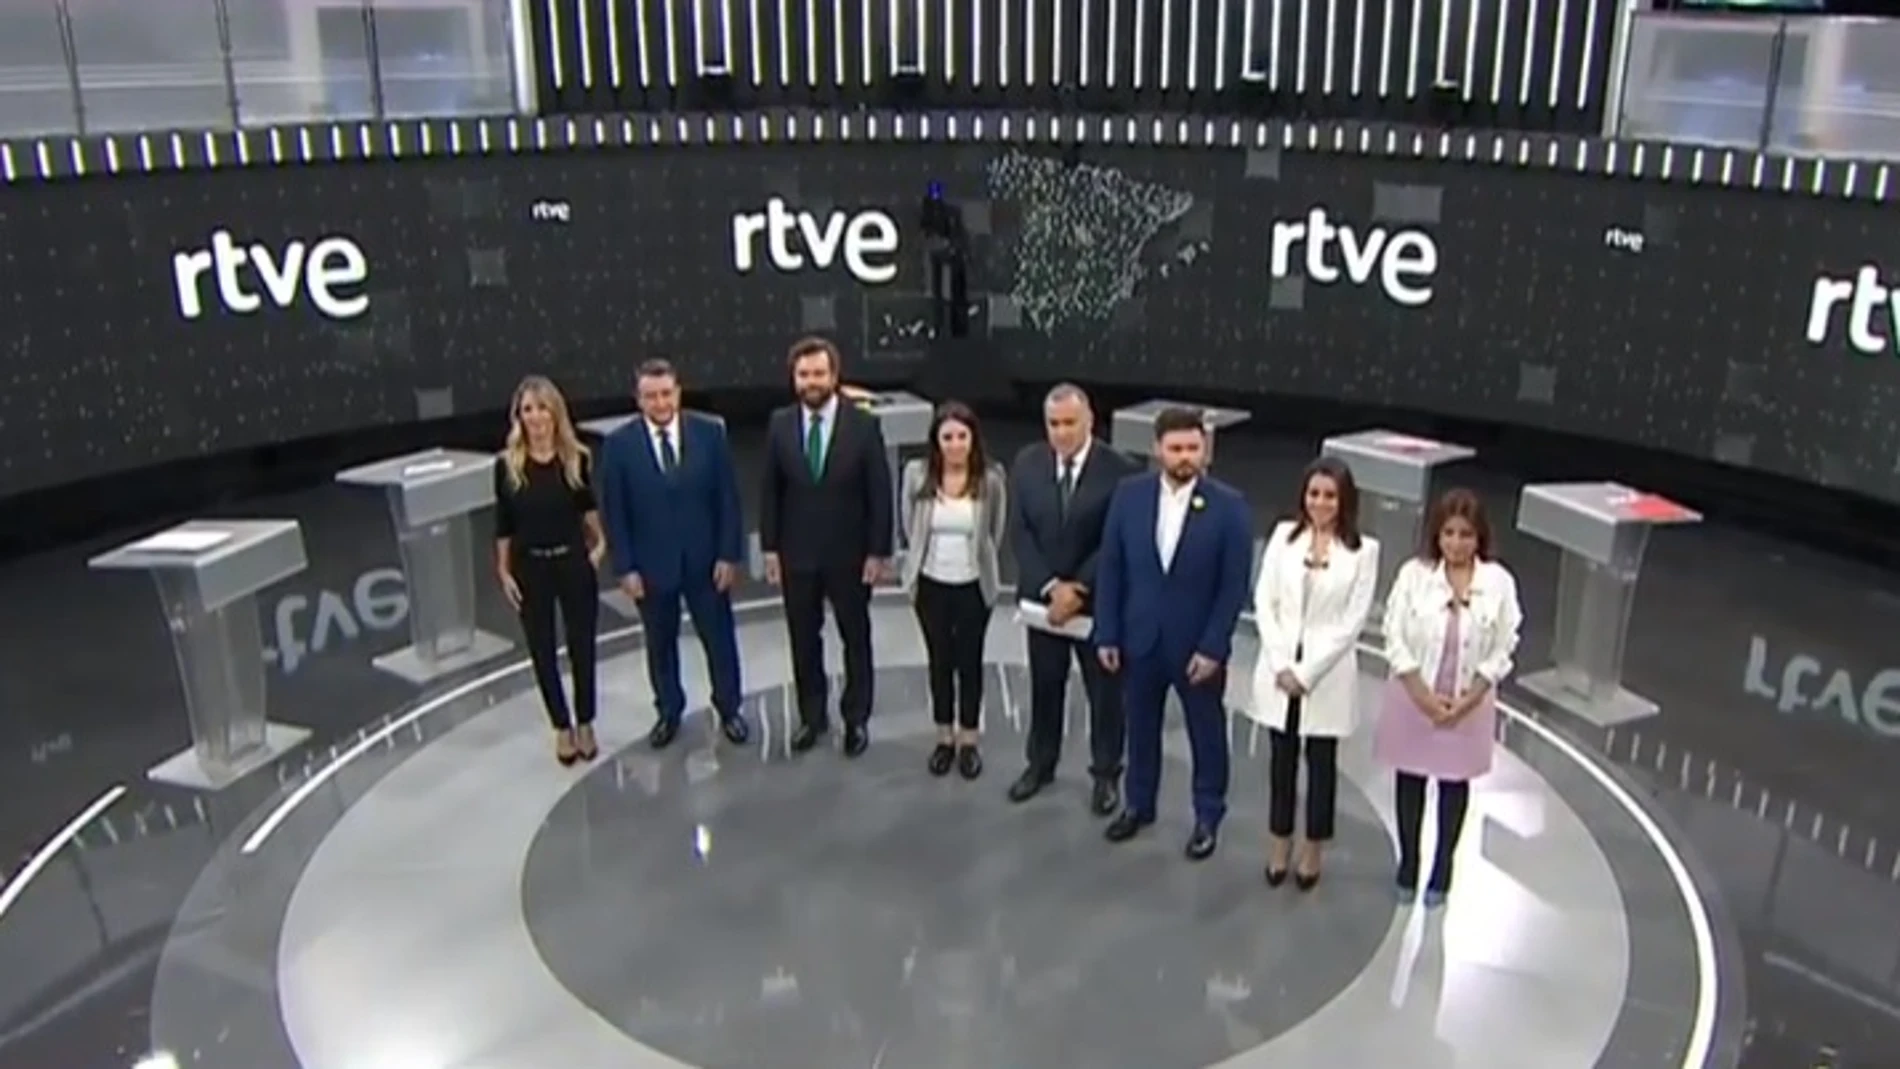 Debate entre los portavoces de los partidos políticos en TVE